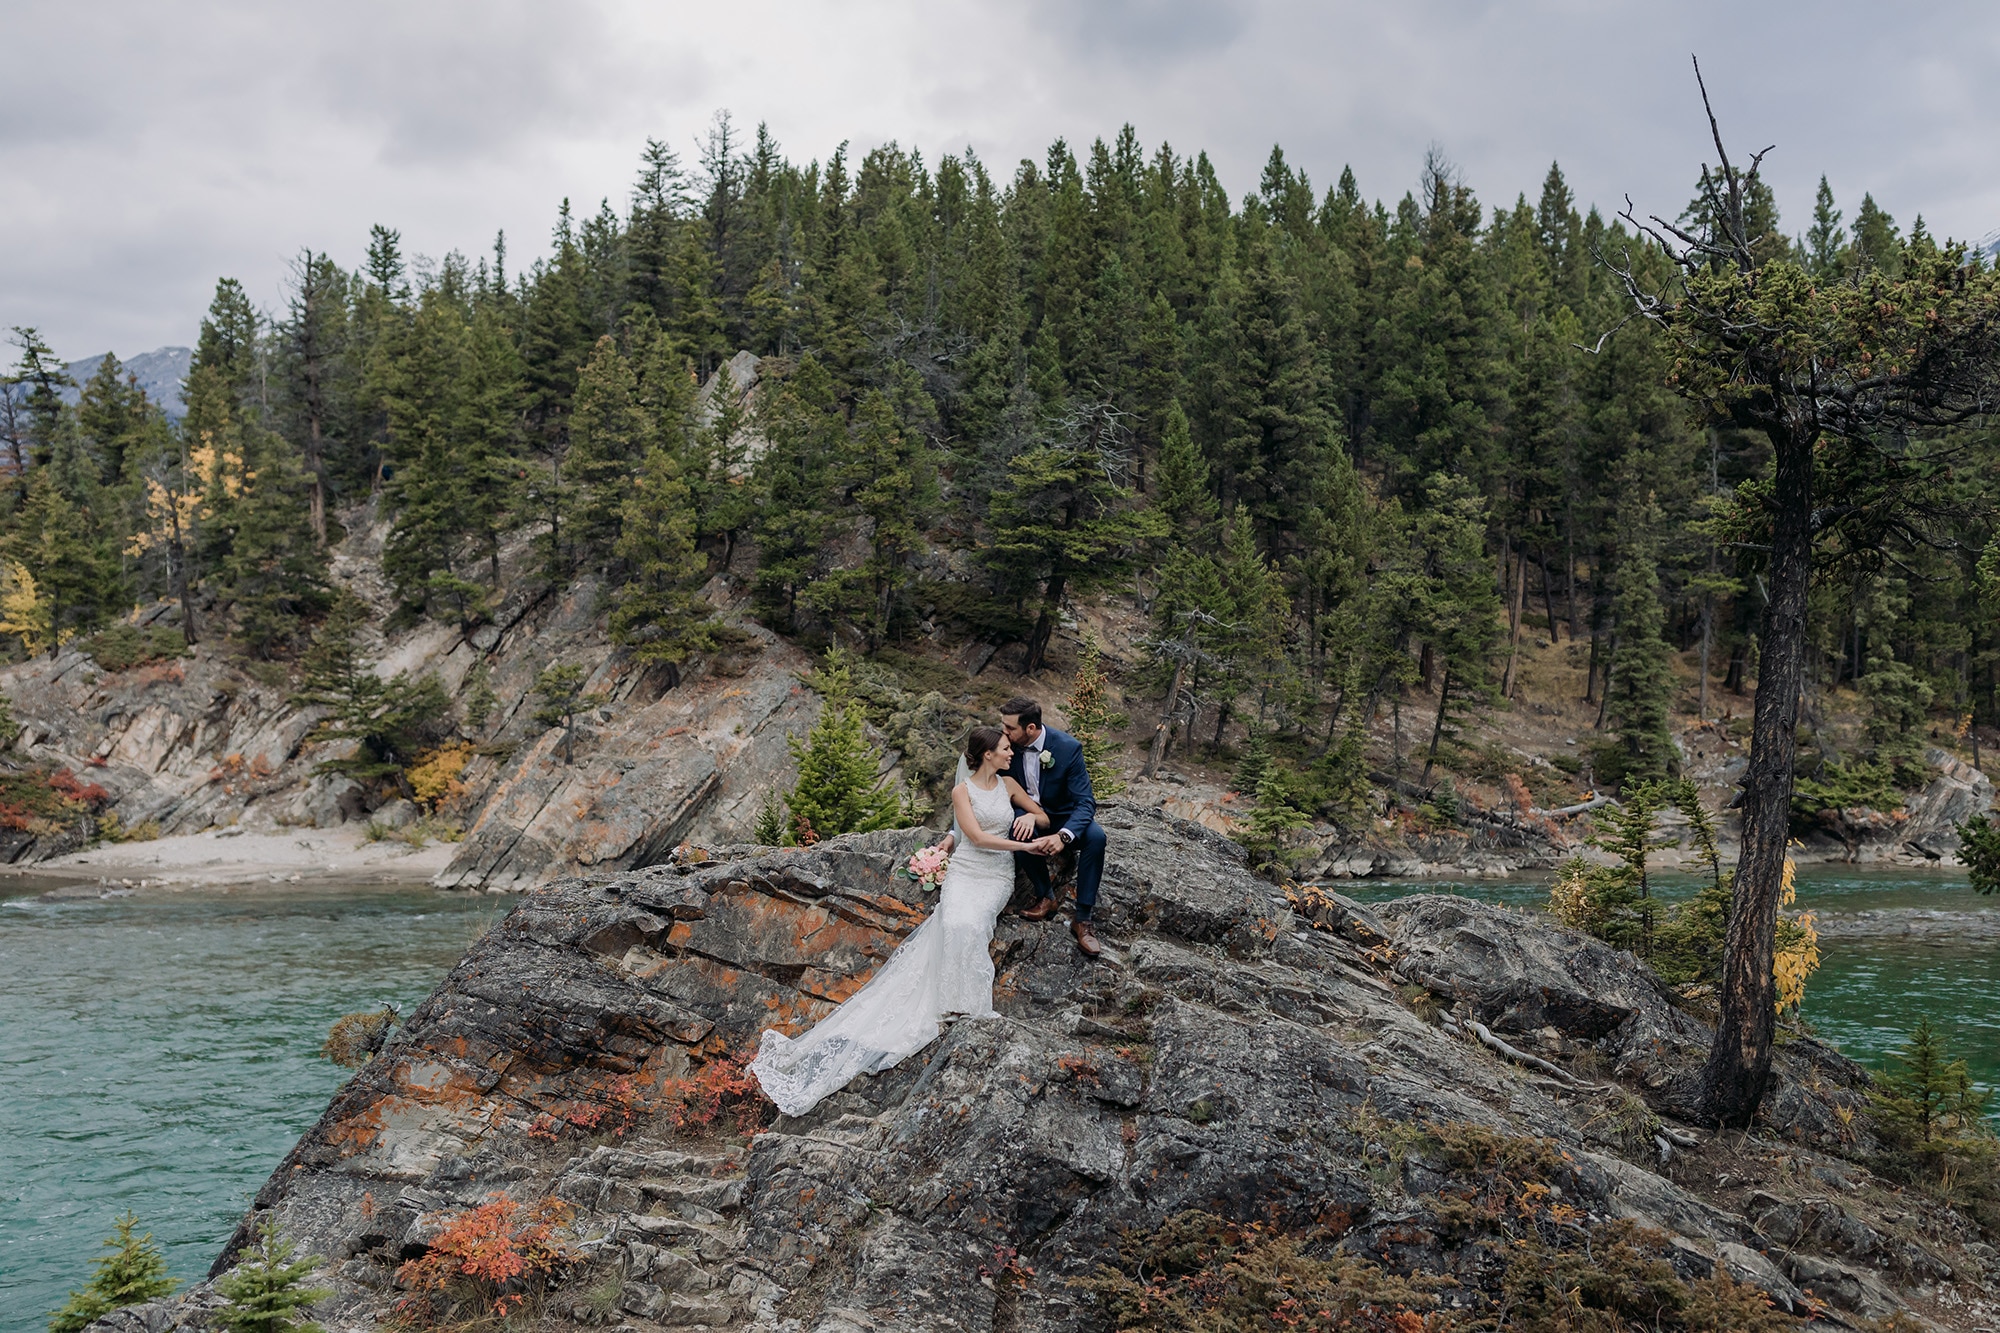 intimate banff wedding photos at Bow Falls